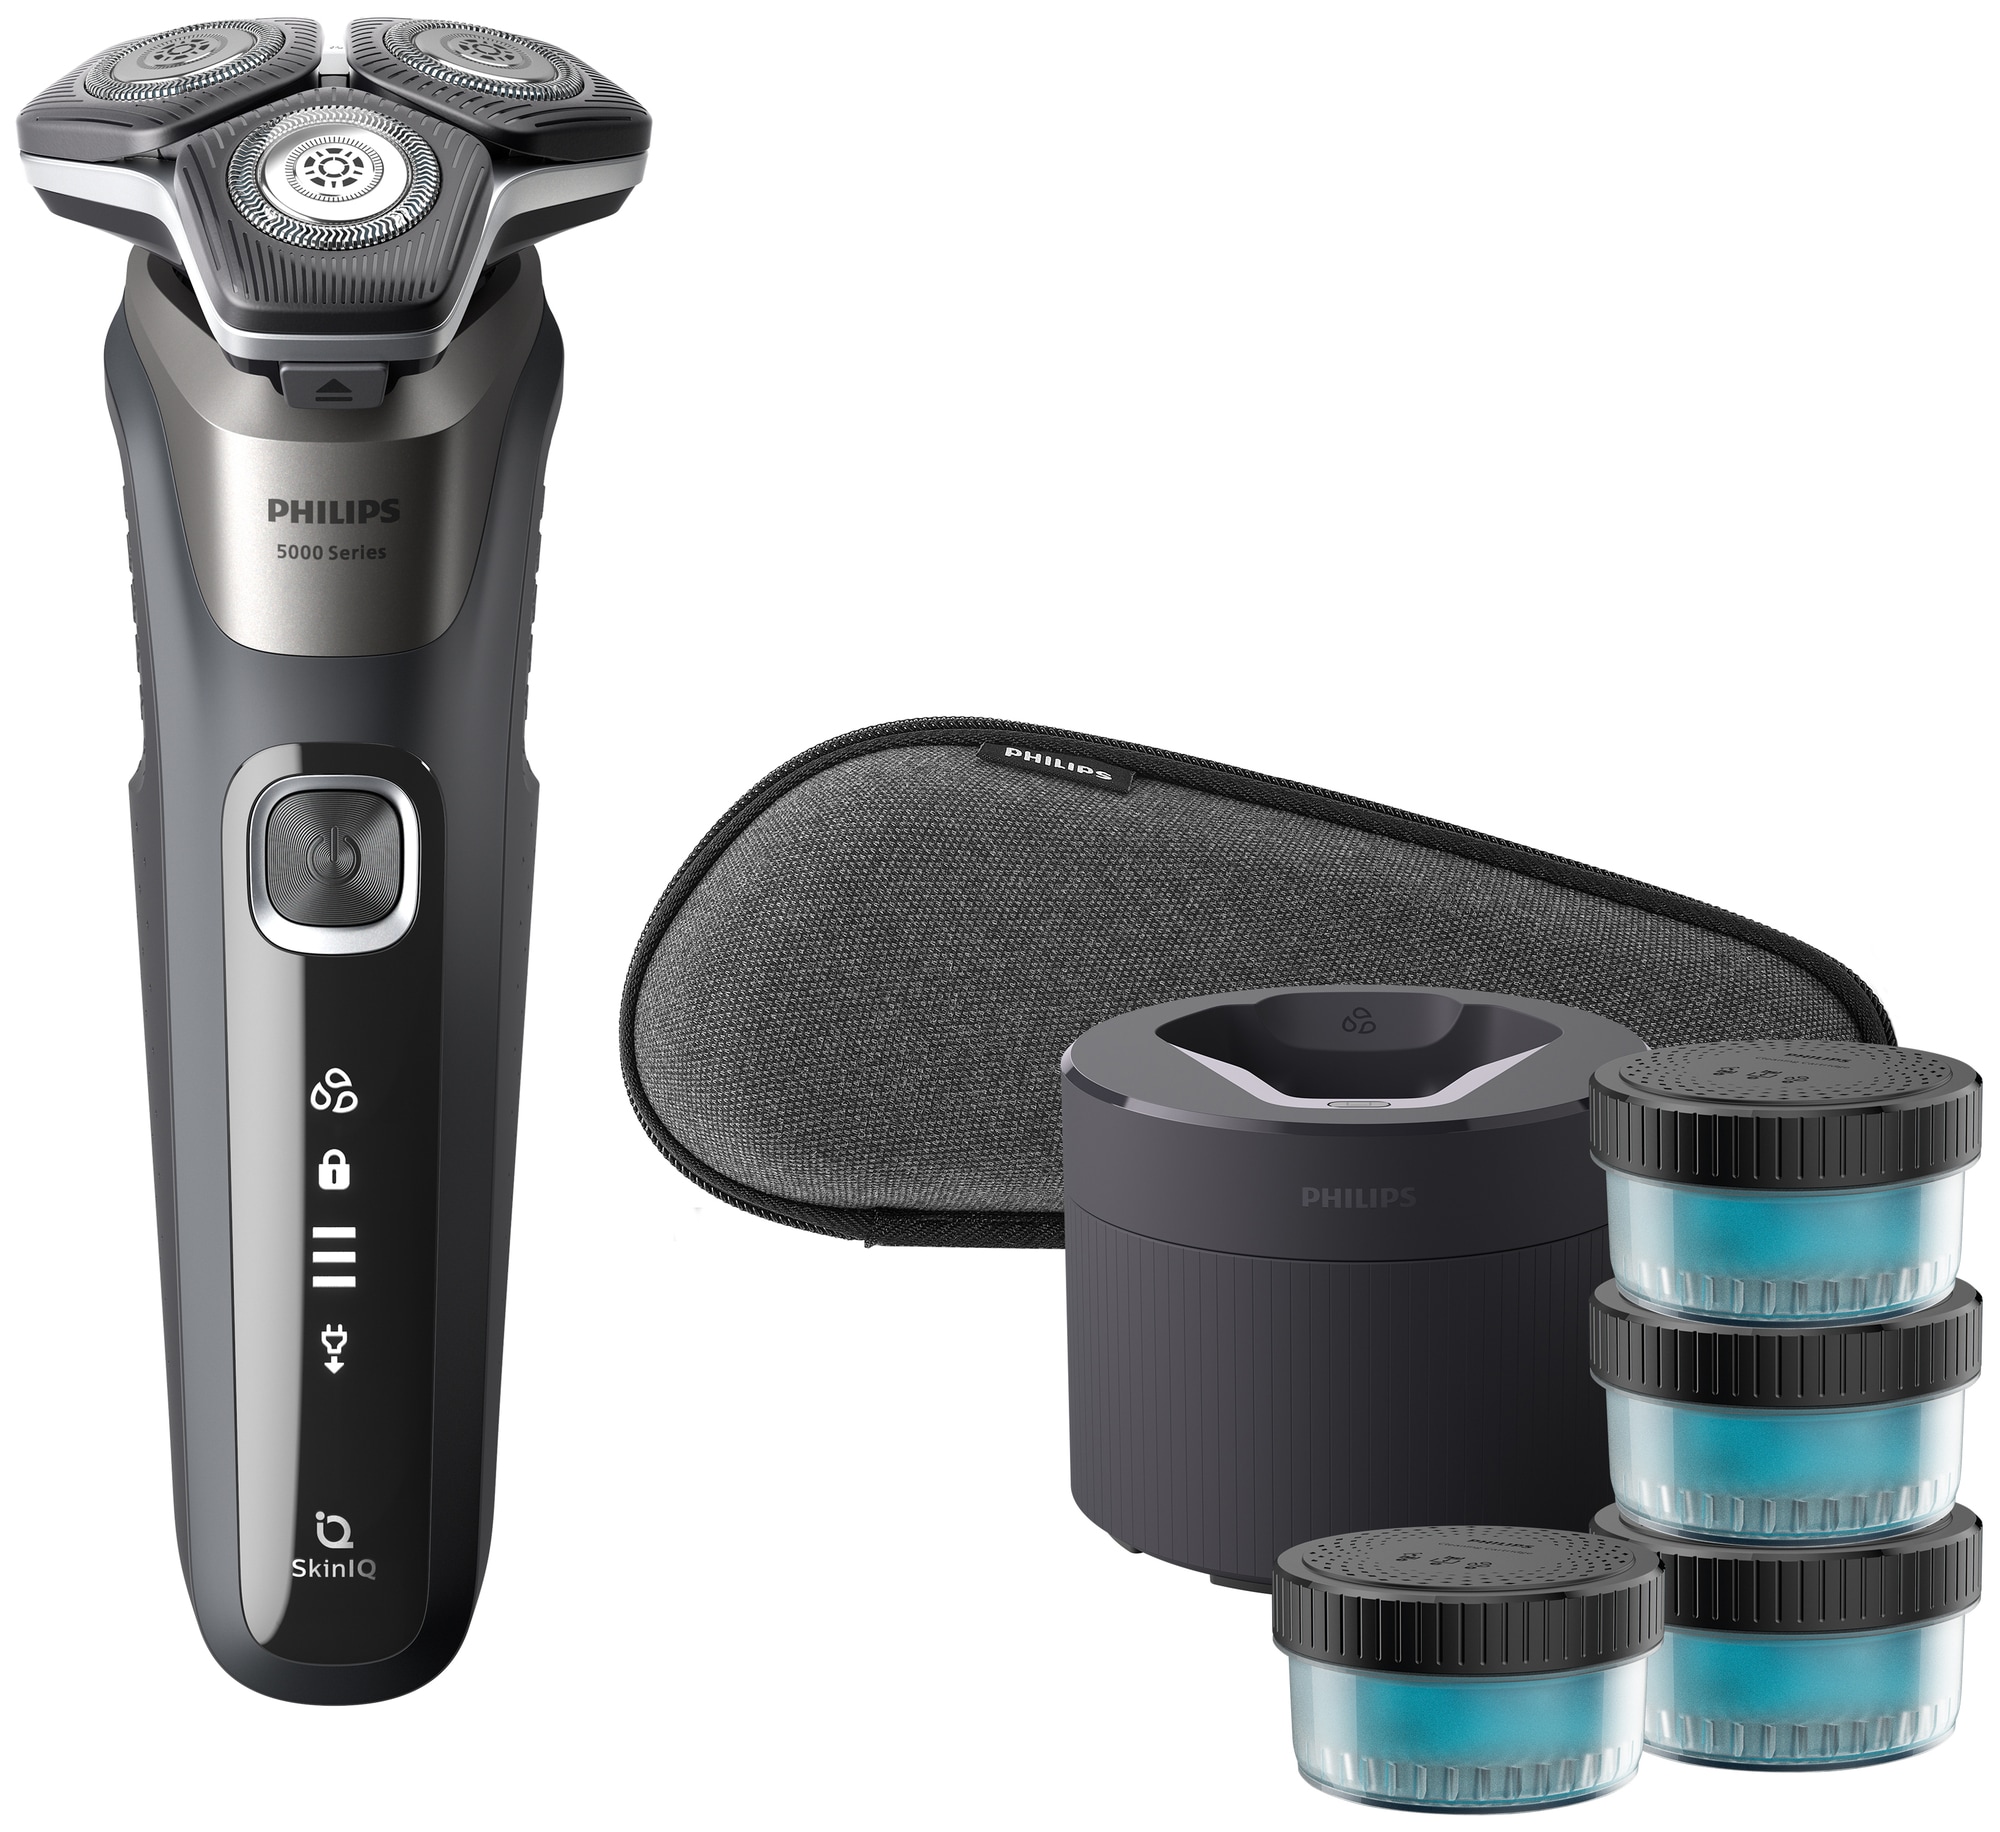 Få en tæt barbering uden irritation med Philips Series 5000 barbermaskine -  S5887/69 - Med Aquatec Wet & Dry teknologi.